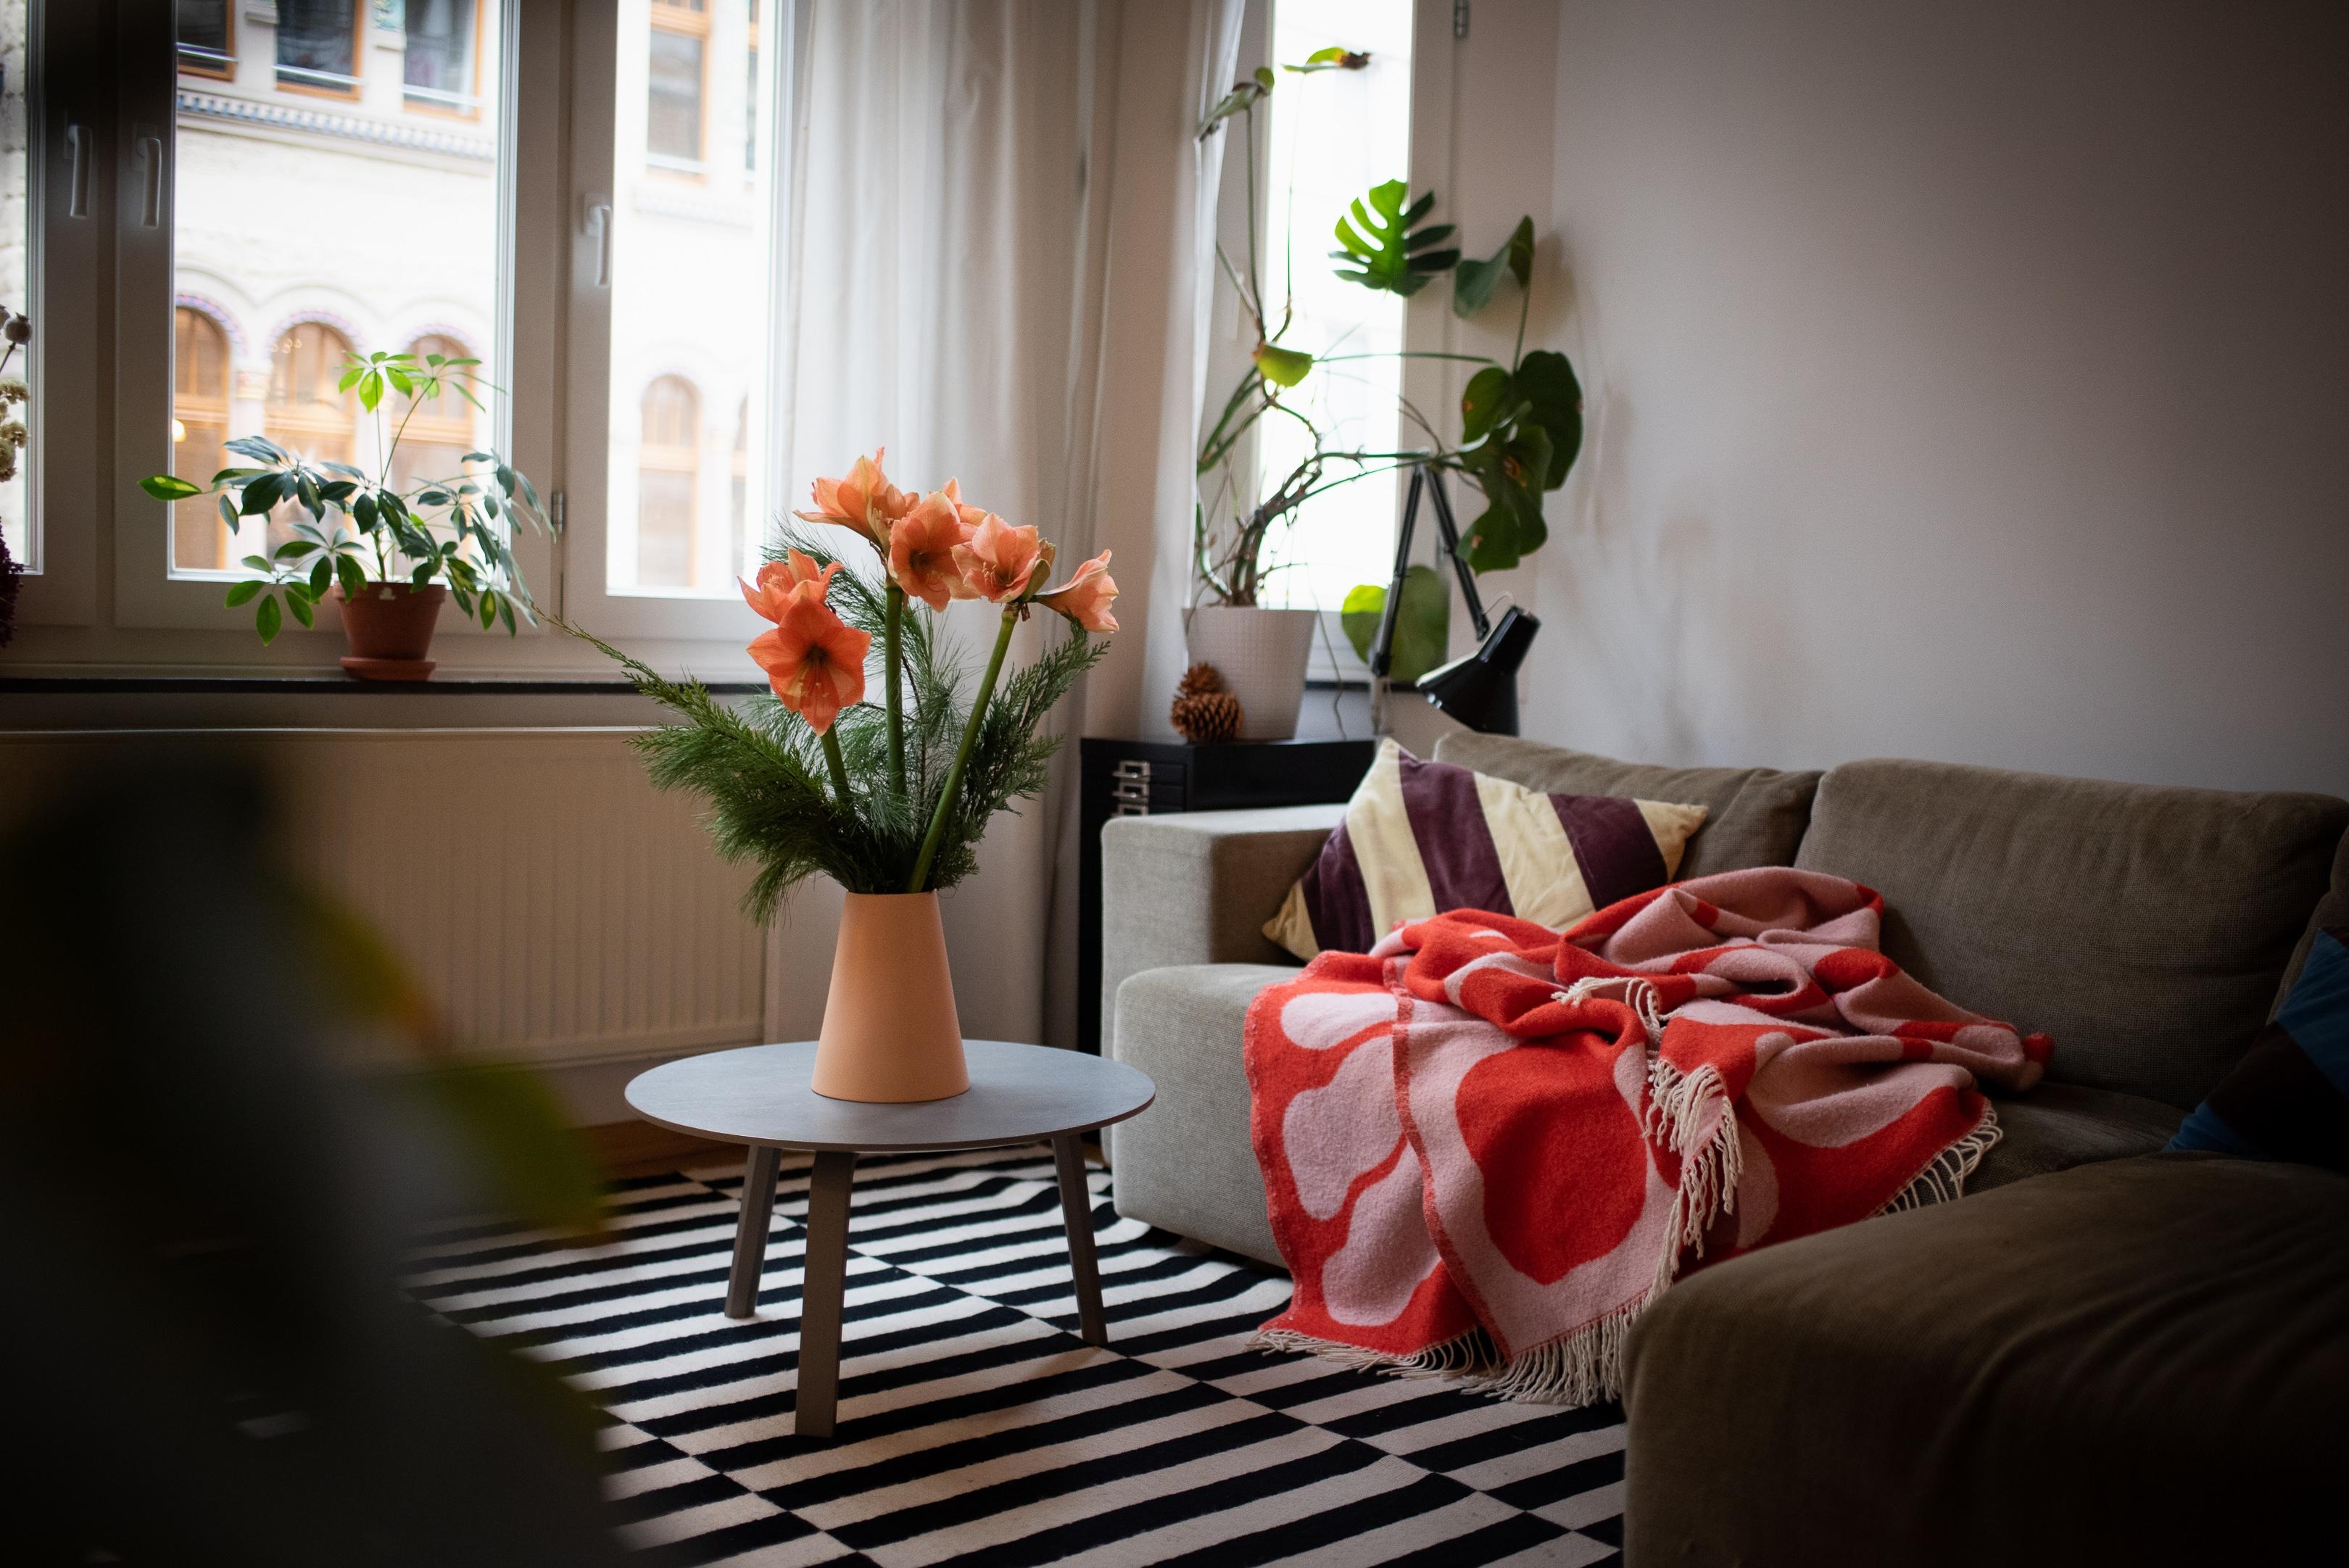 Kuscheldienstag! #wohnzimmer #kuschelecke #sofa #decke #amaryllis #cozyplace